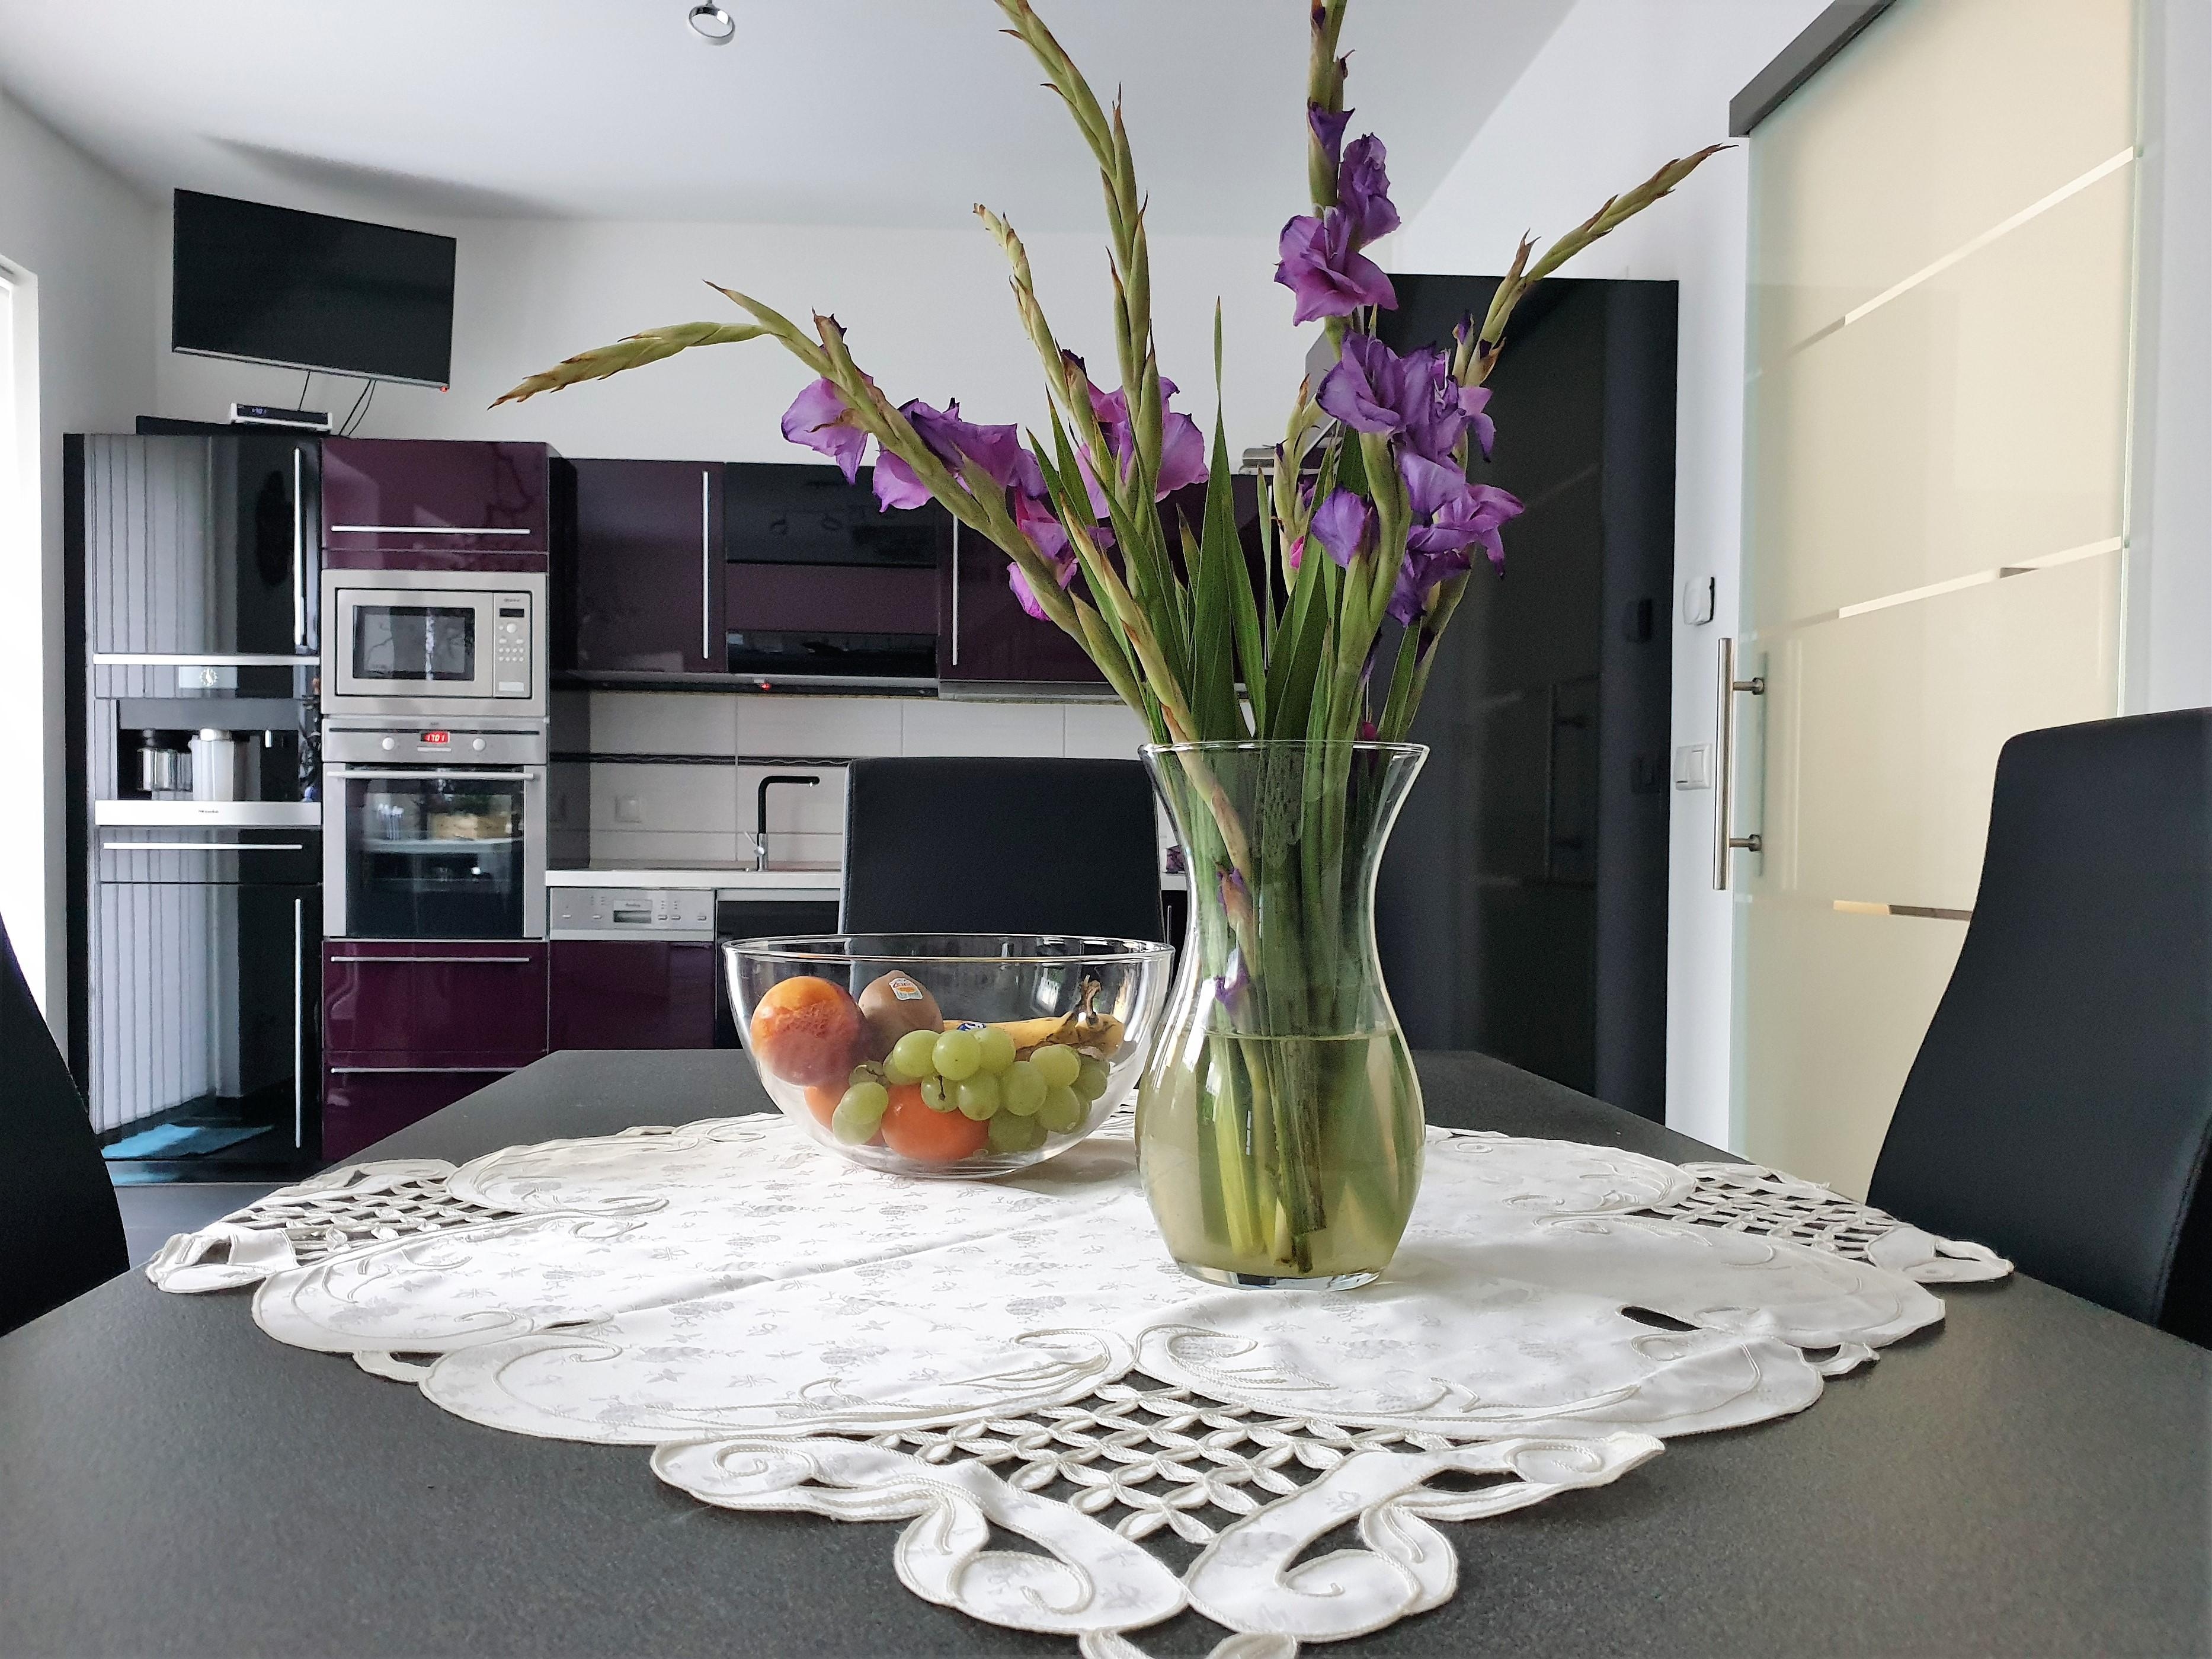 Unsere Küche ist modern in Flieder, dazu hole ich mir auch immer passende Blumen an den Esstisch #küche #livingchallange